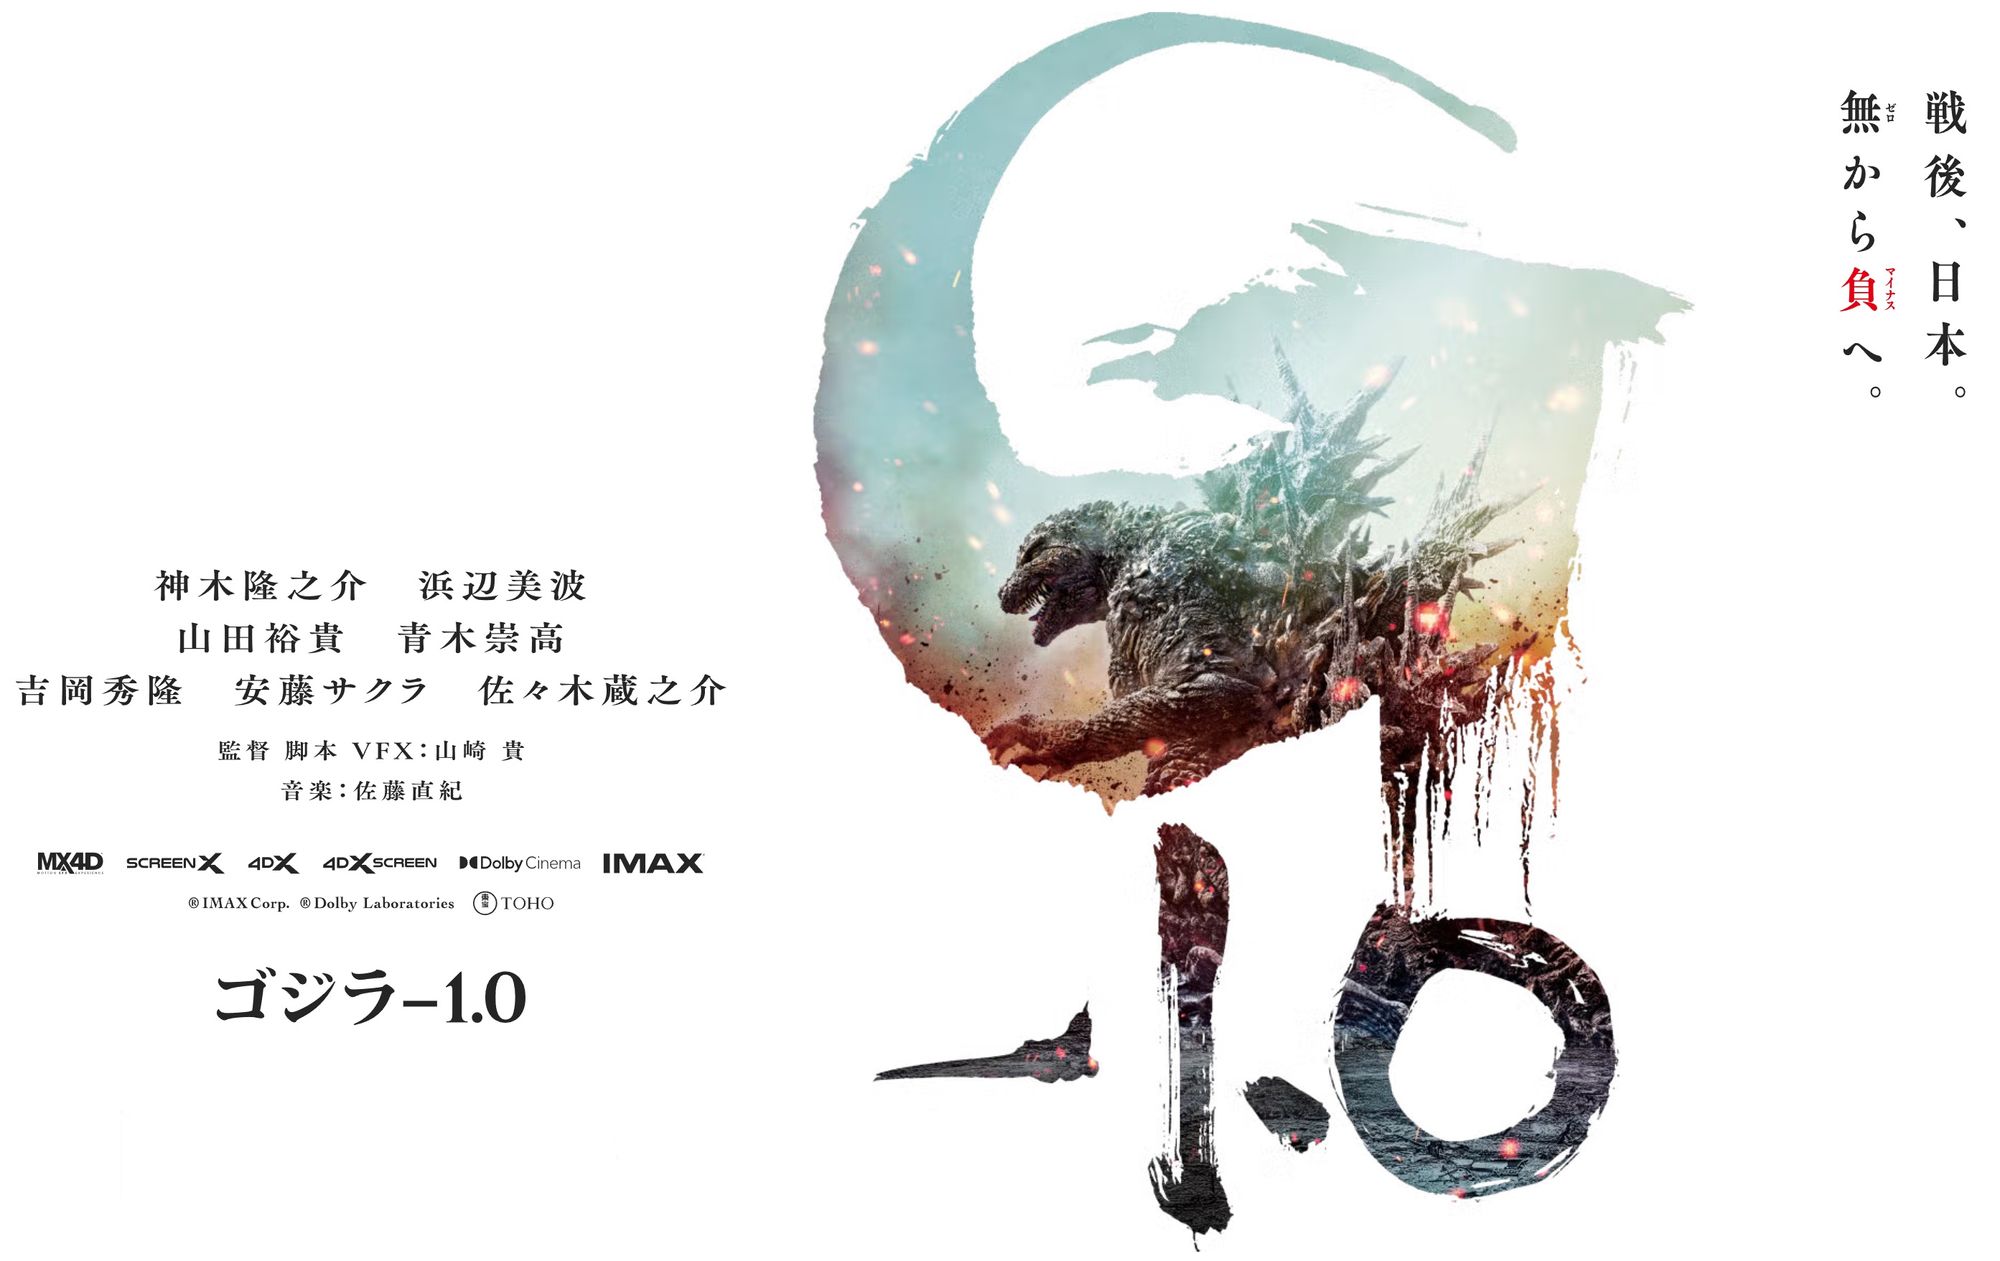 【ネタバレあり】映画『ゴジラ-1.0』はゴジラシリーズ最新作として100点満点という話